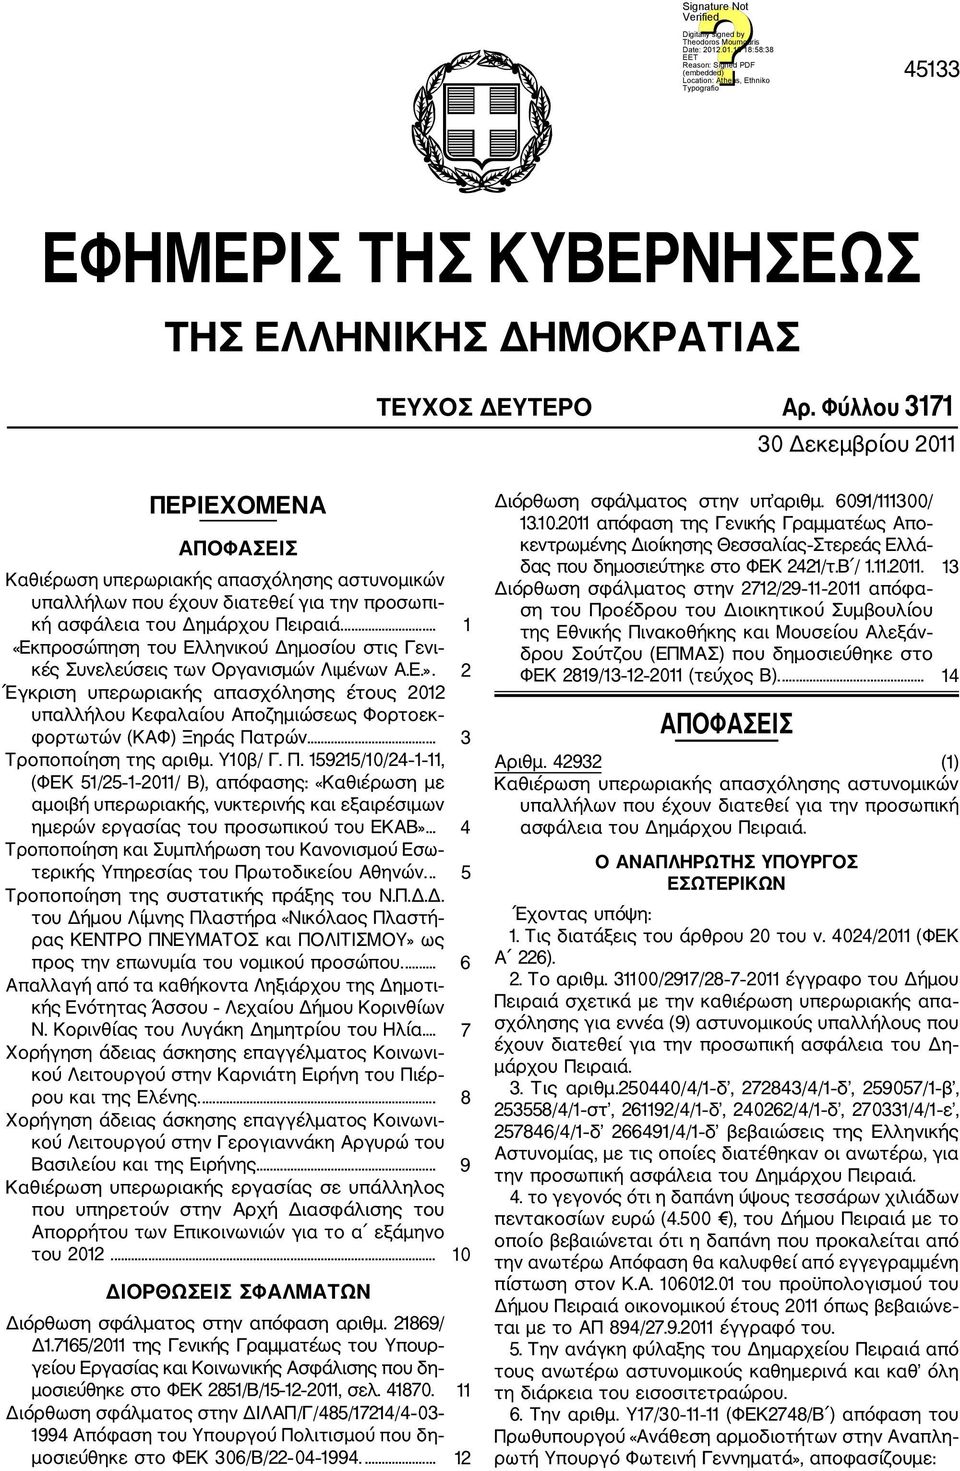 ... 1 «Εκπροσώπηση του Ελληνικού Δημοσίου στις Γενι κές Συνελεύσεις των Οργανισμών Λιμένων Α.Ε.».